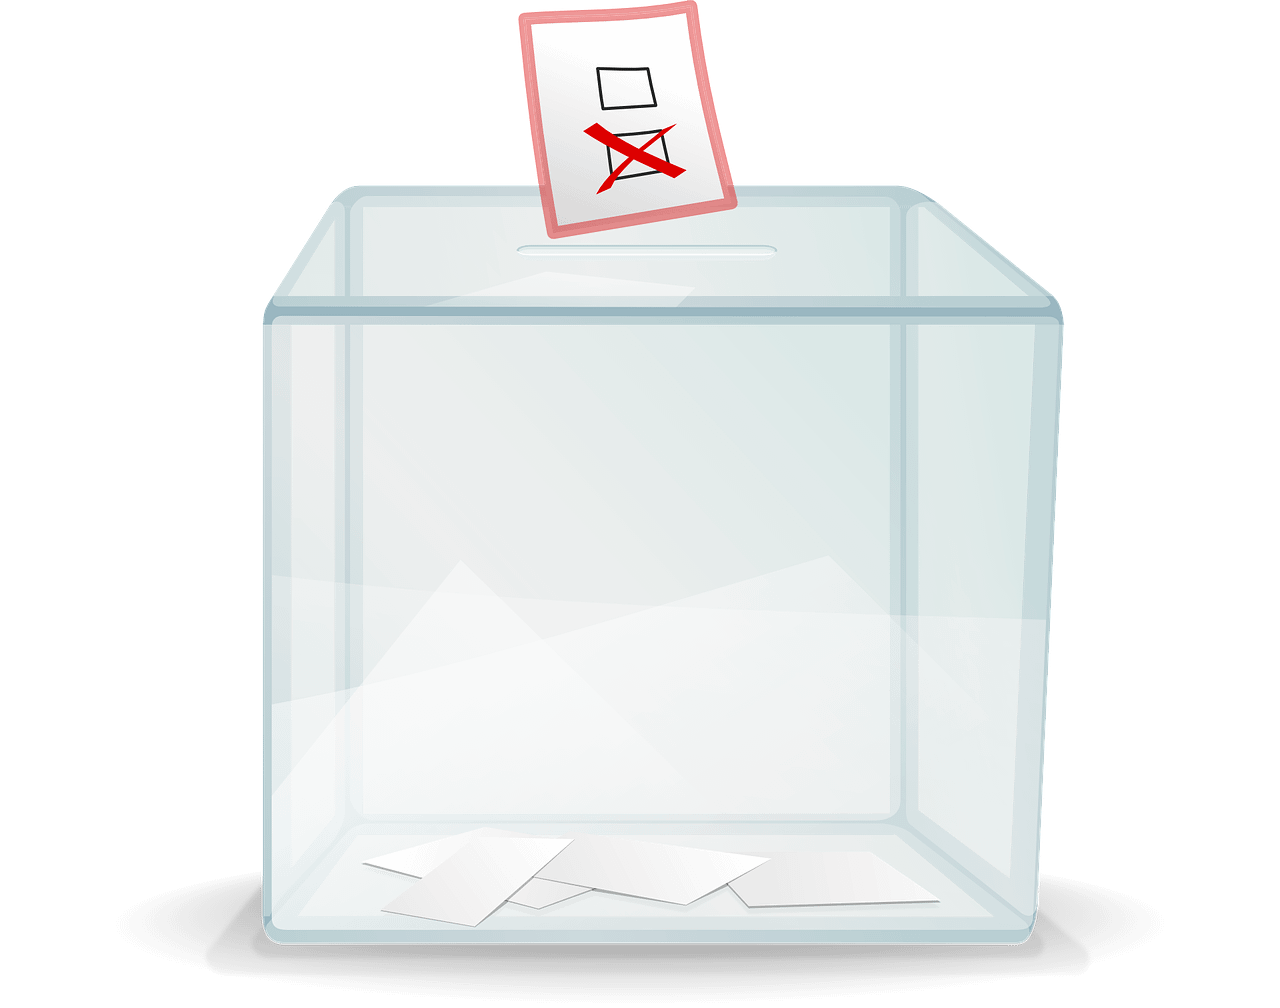 Las elecciones locales de Polonia del 7 de abril fueron otro ejemplo de ello, porque ofrecieron las primeras señales de las fortalezas relativas de los partidos democráticos desde las elecciones generales del año pasado. Foto: Pixabay.